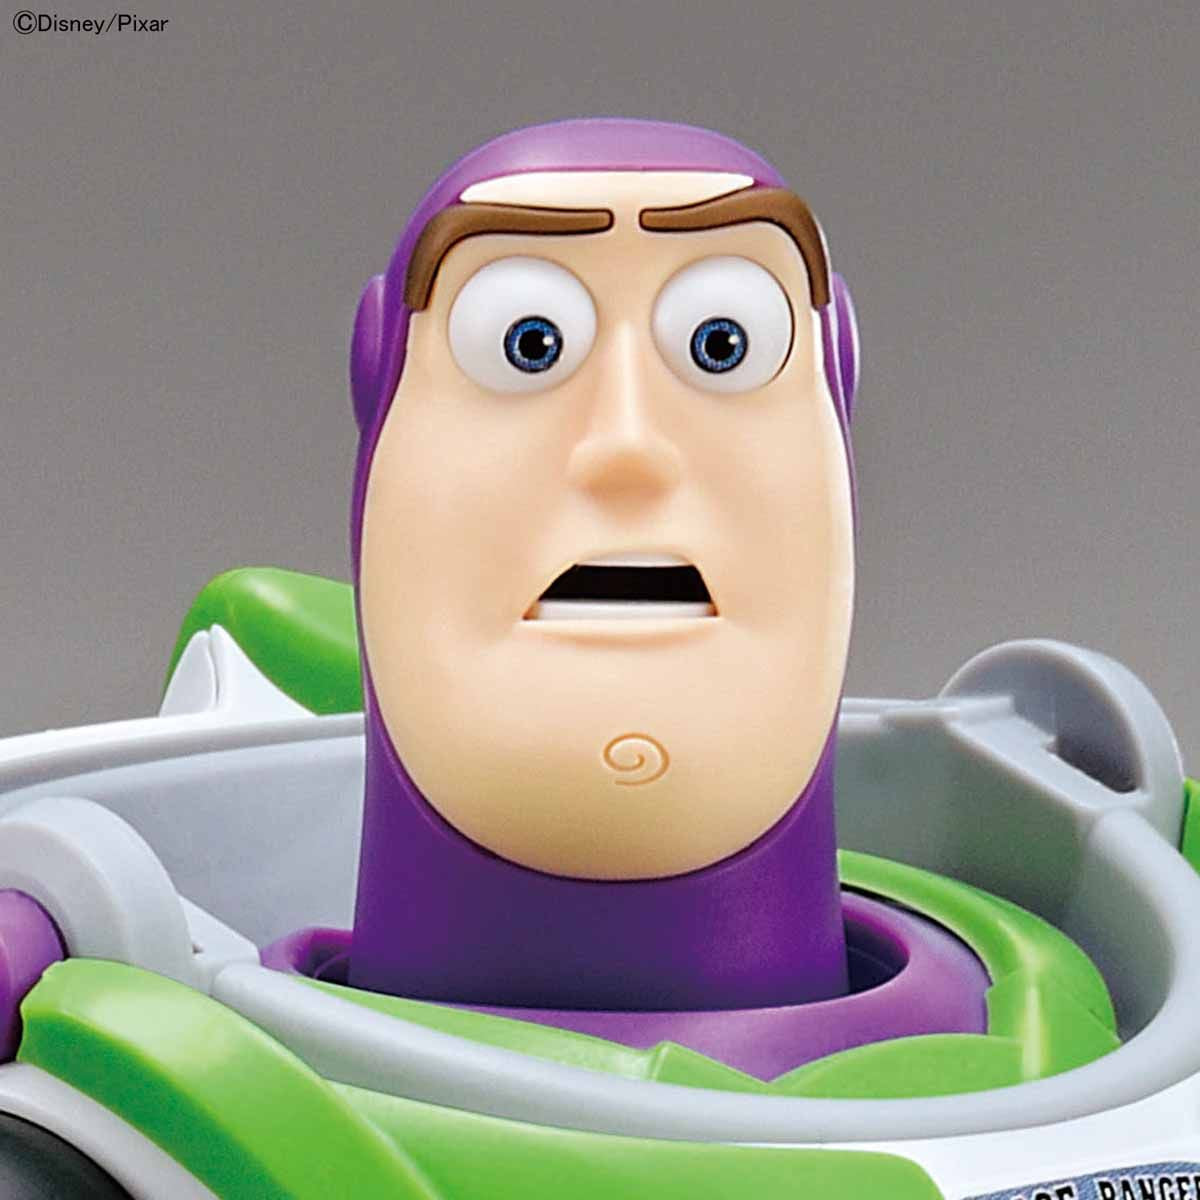 Toy Story 4 - Buzz Lightyear